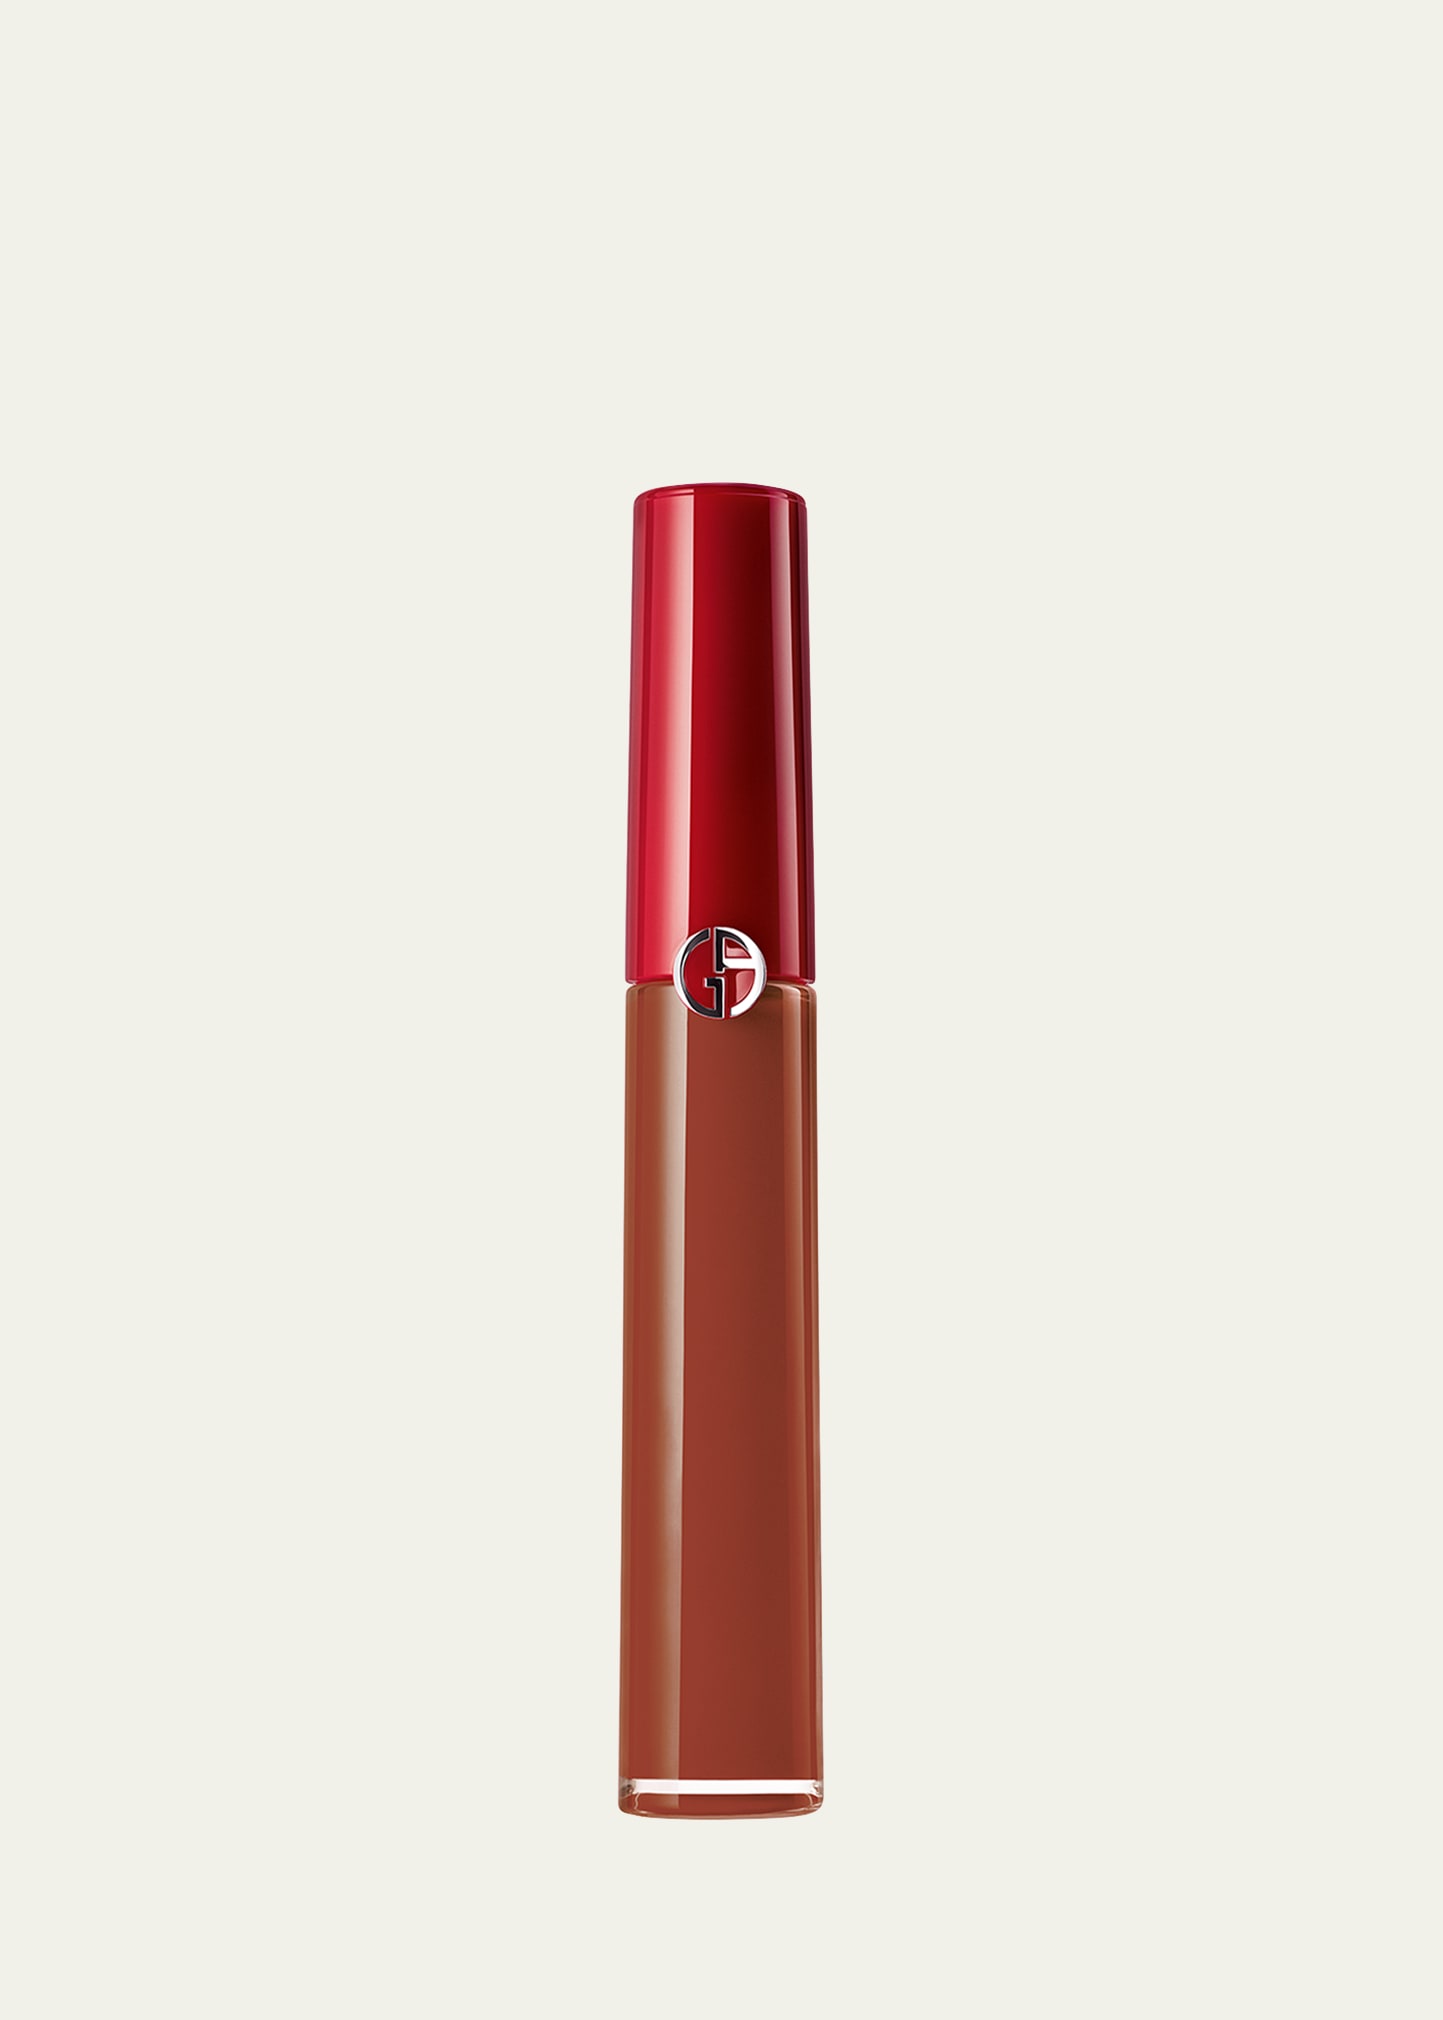 Armani Beauty Lip Maestro Liquid Lipstick In 208 Venetian Red